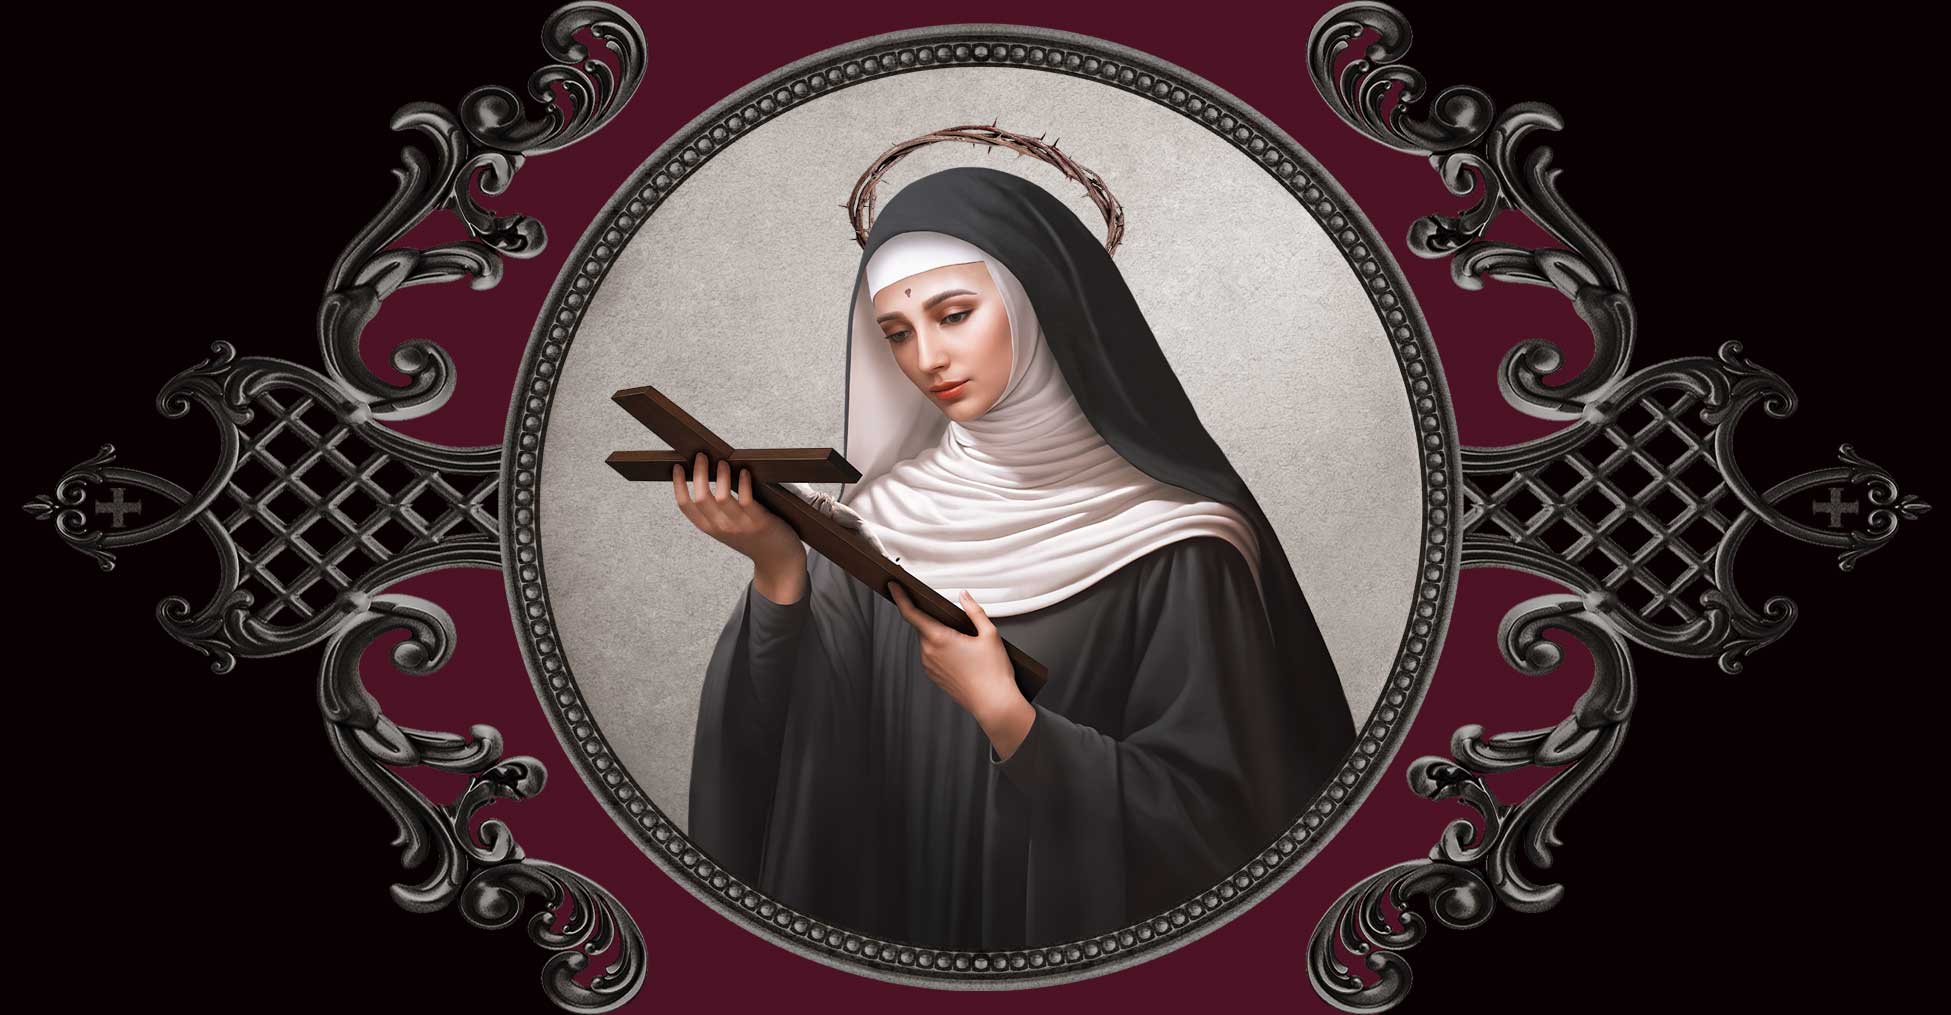 May 22 + Saint Rita of Cascia - VENXARA®